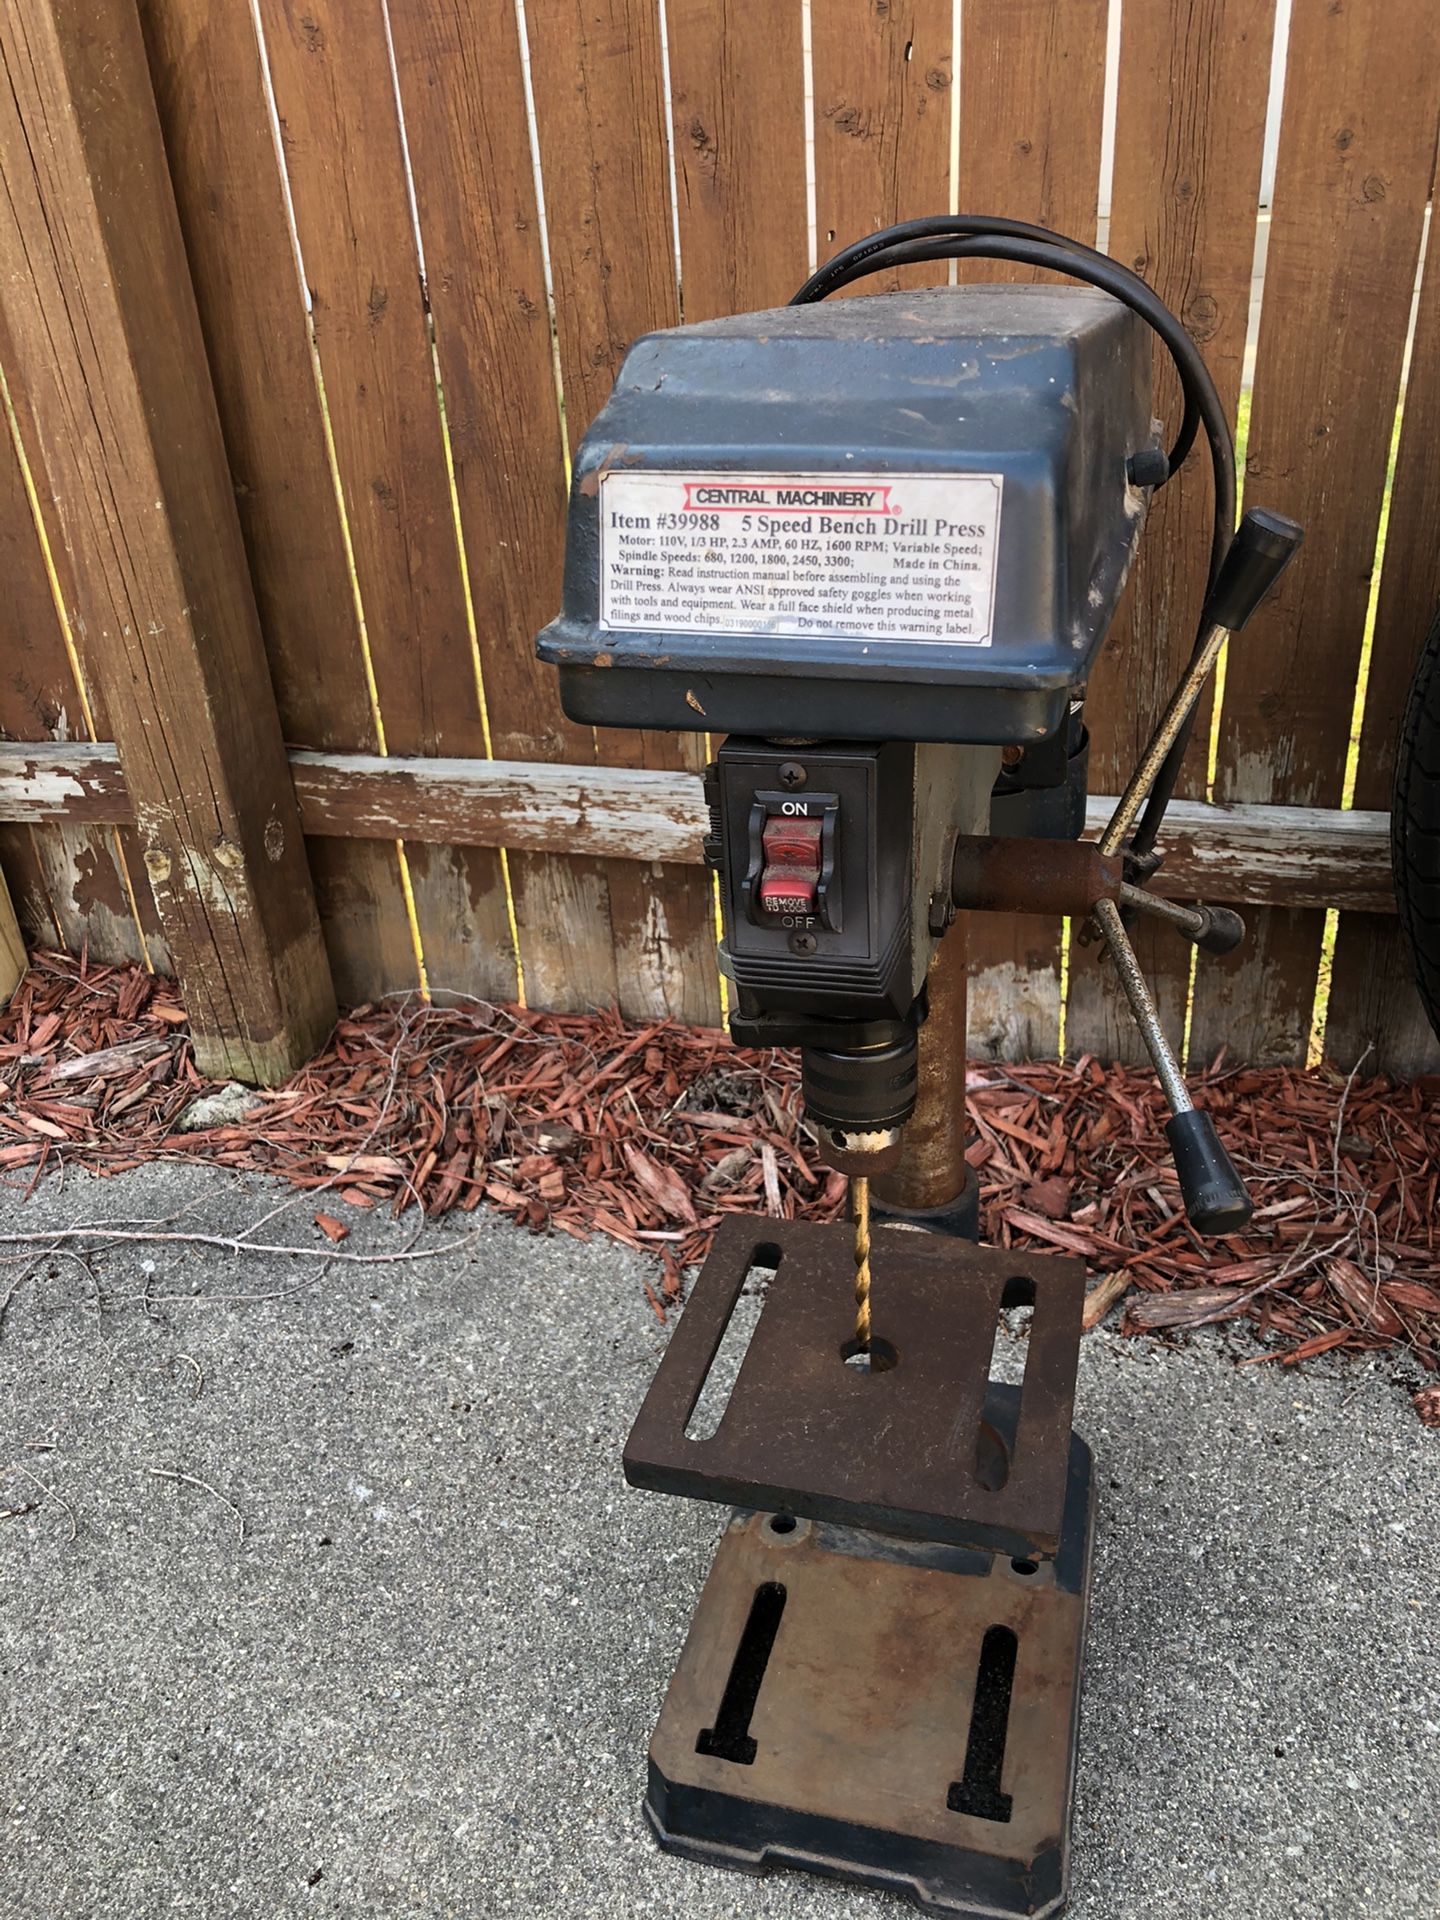 5 speed bench drill press